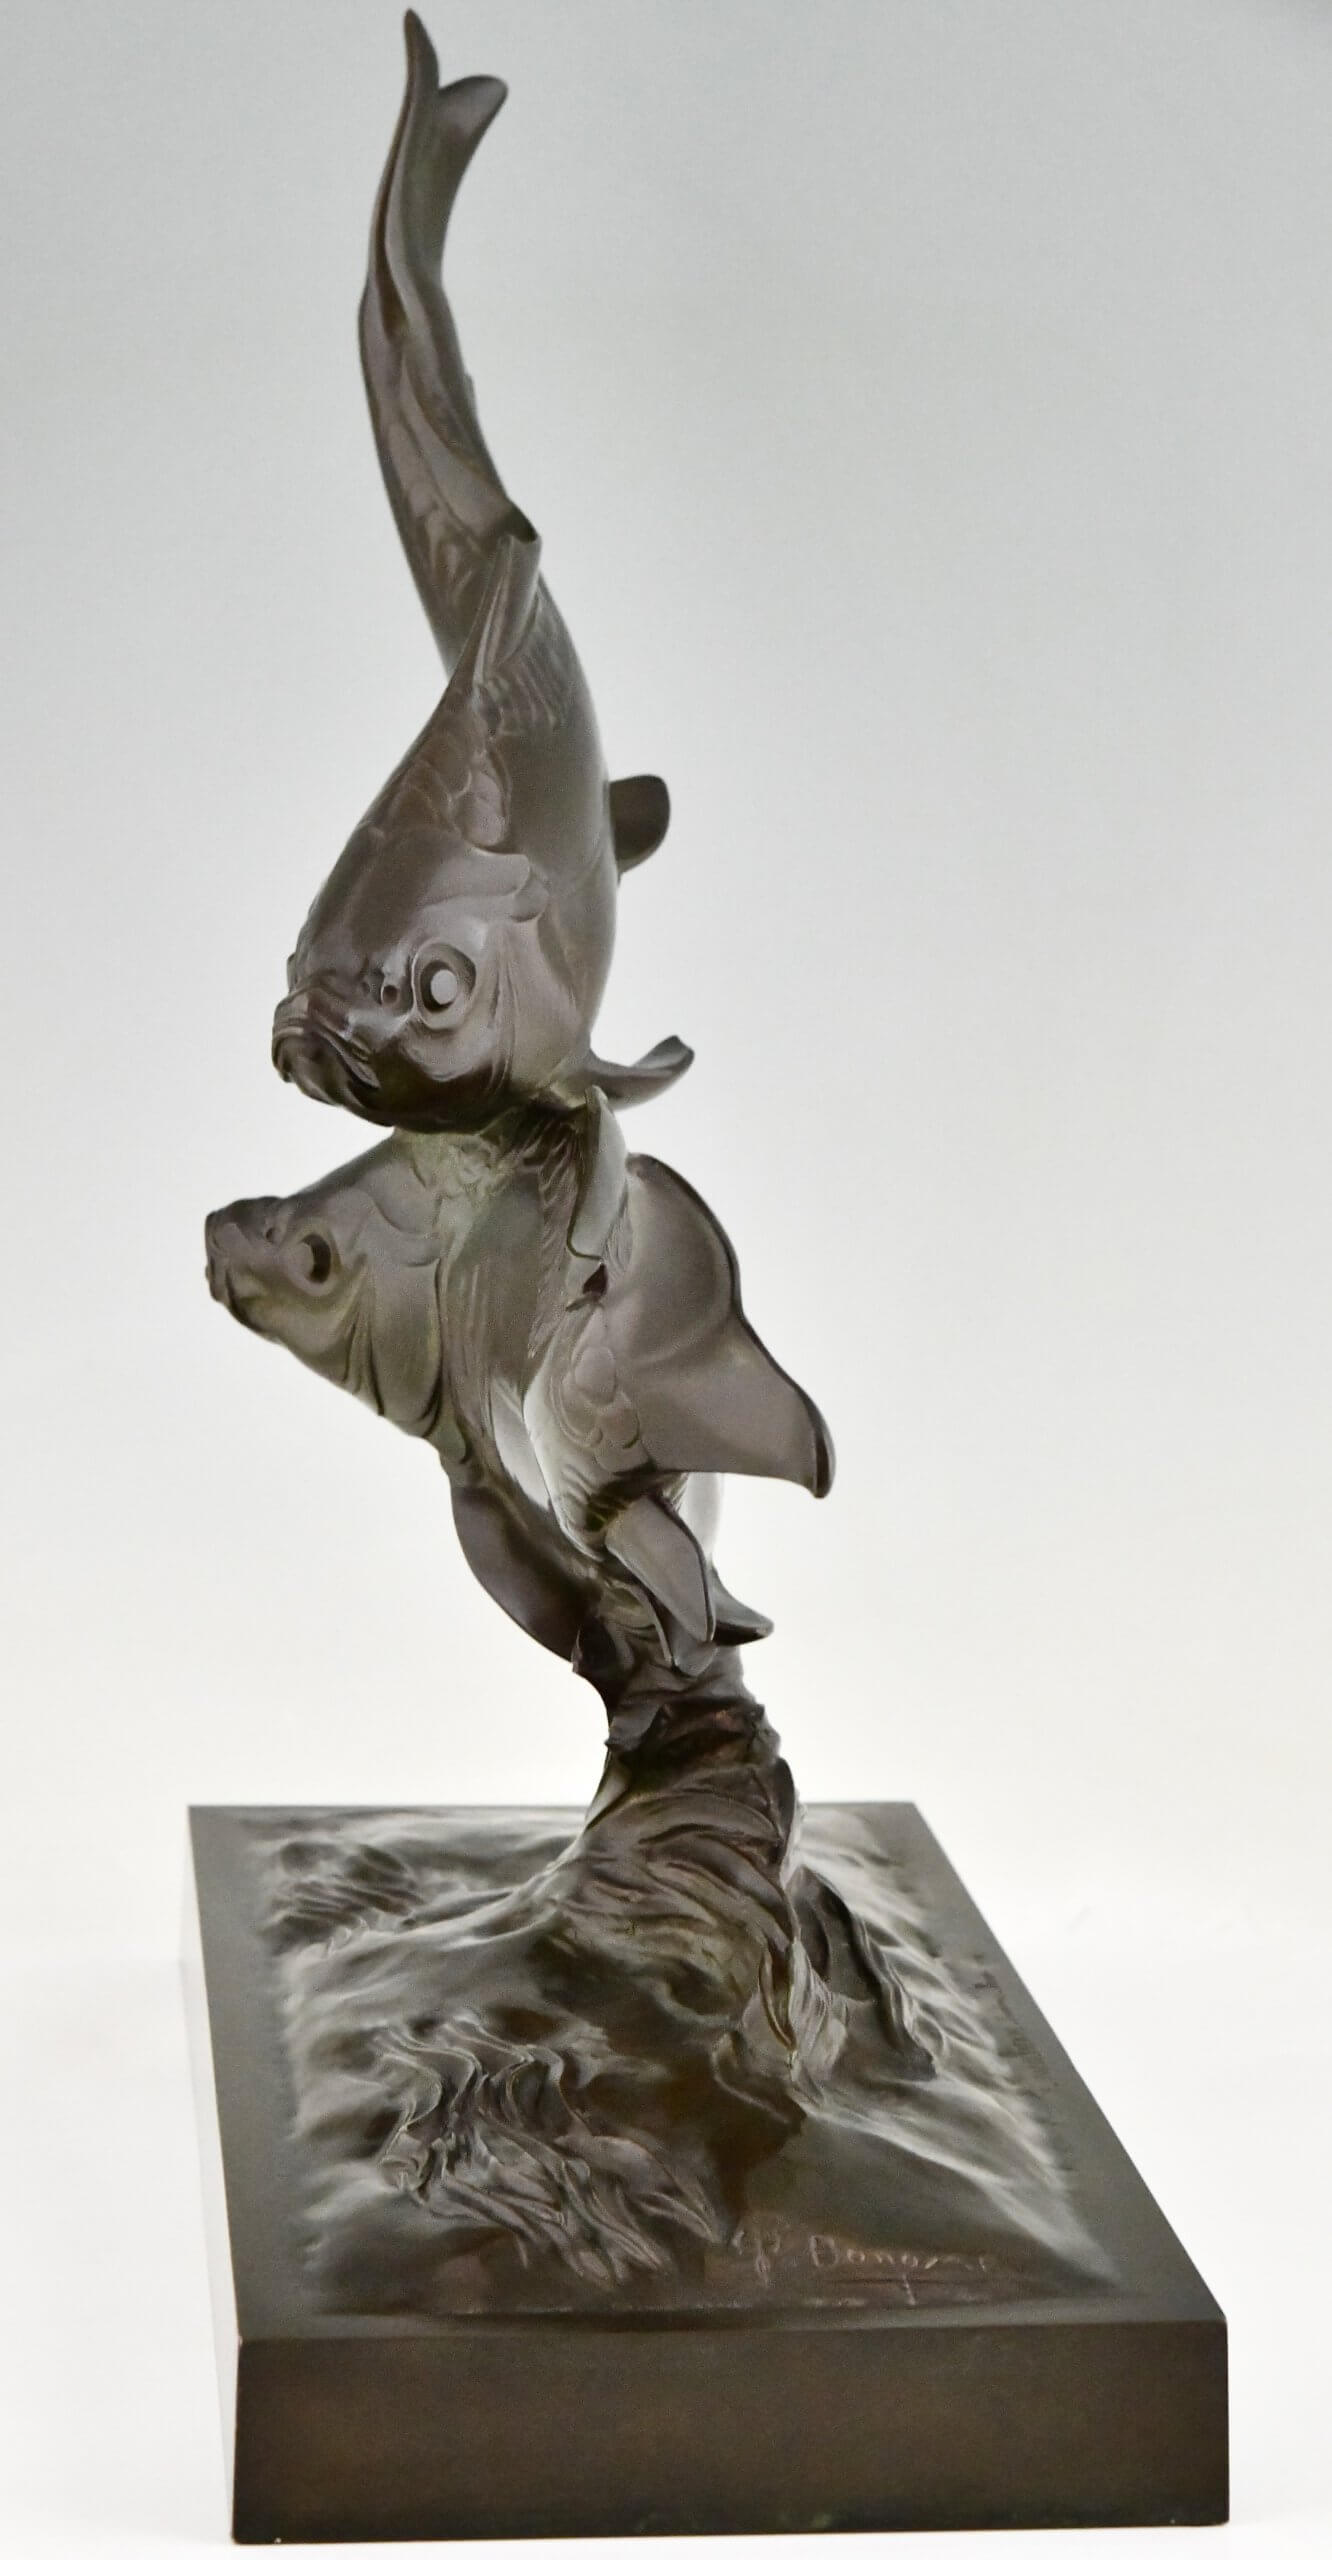 Art Deco bronzen sculptuur van twee karper vissen